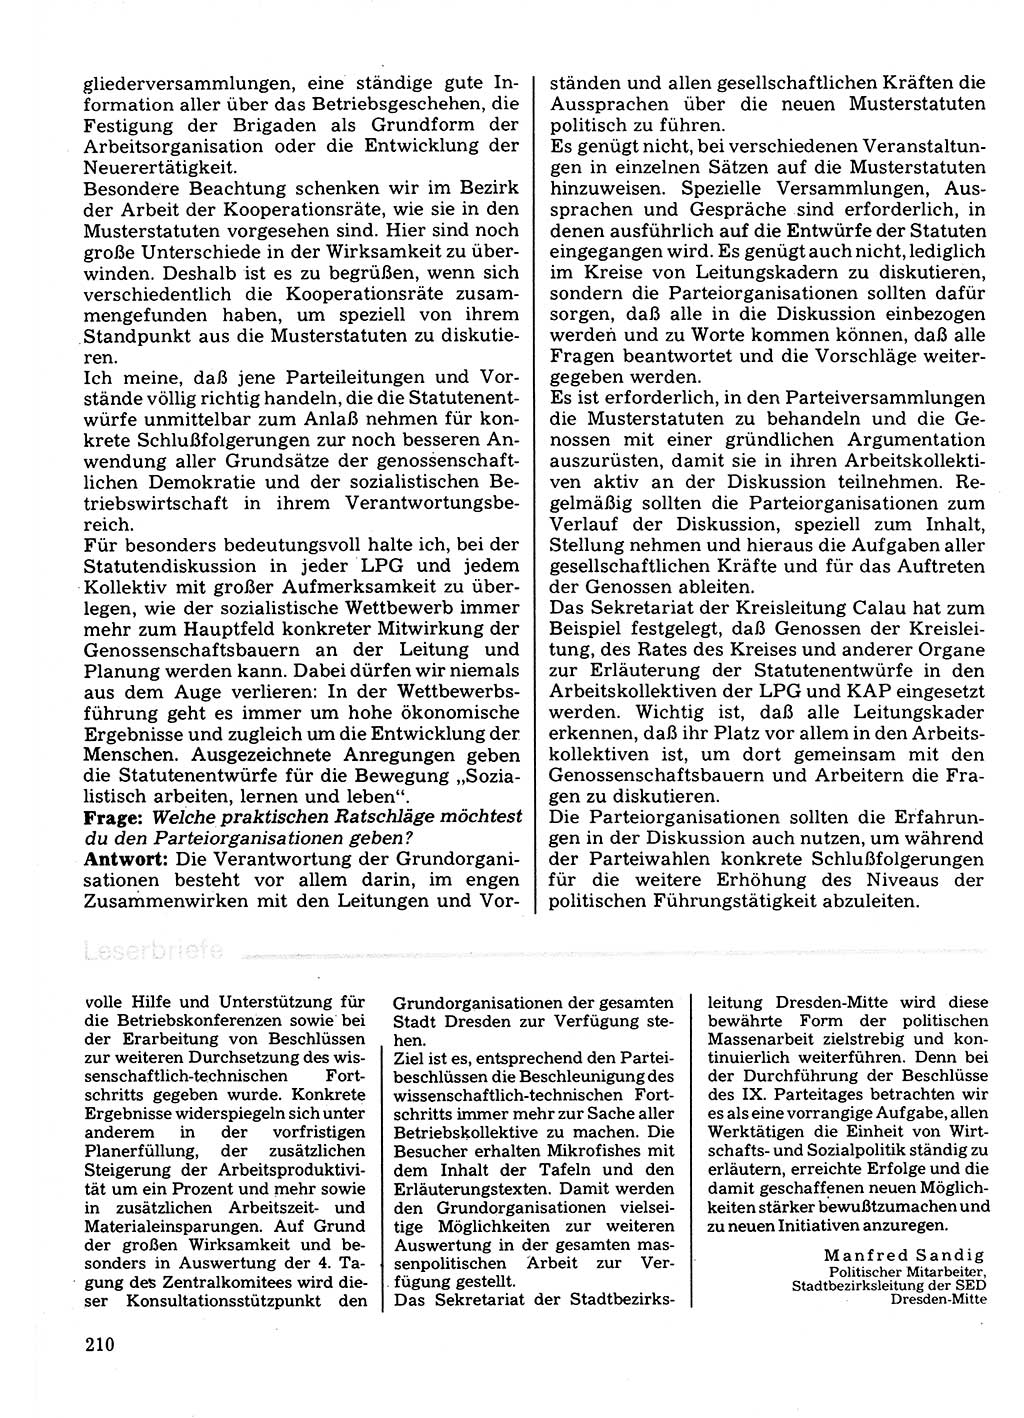 Neuer Weg (NW), Organ des Zentralkomitees (ZK) der SED (Sozialistische Einheitspartei Deutschlands) für Fragen des Parteilebens, 32. Jahrgang [Deutsche Demokratische Republik (DDR)] 1977, Seite 210 (NW ZK SED DDR 1977, S. 210)